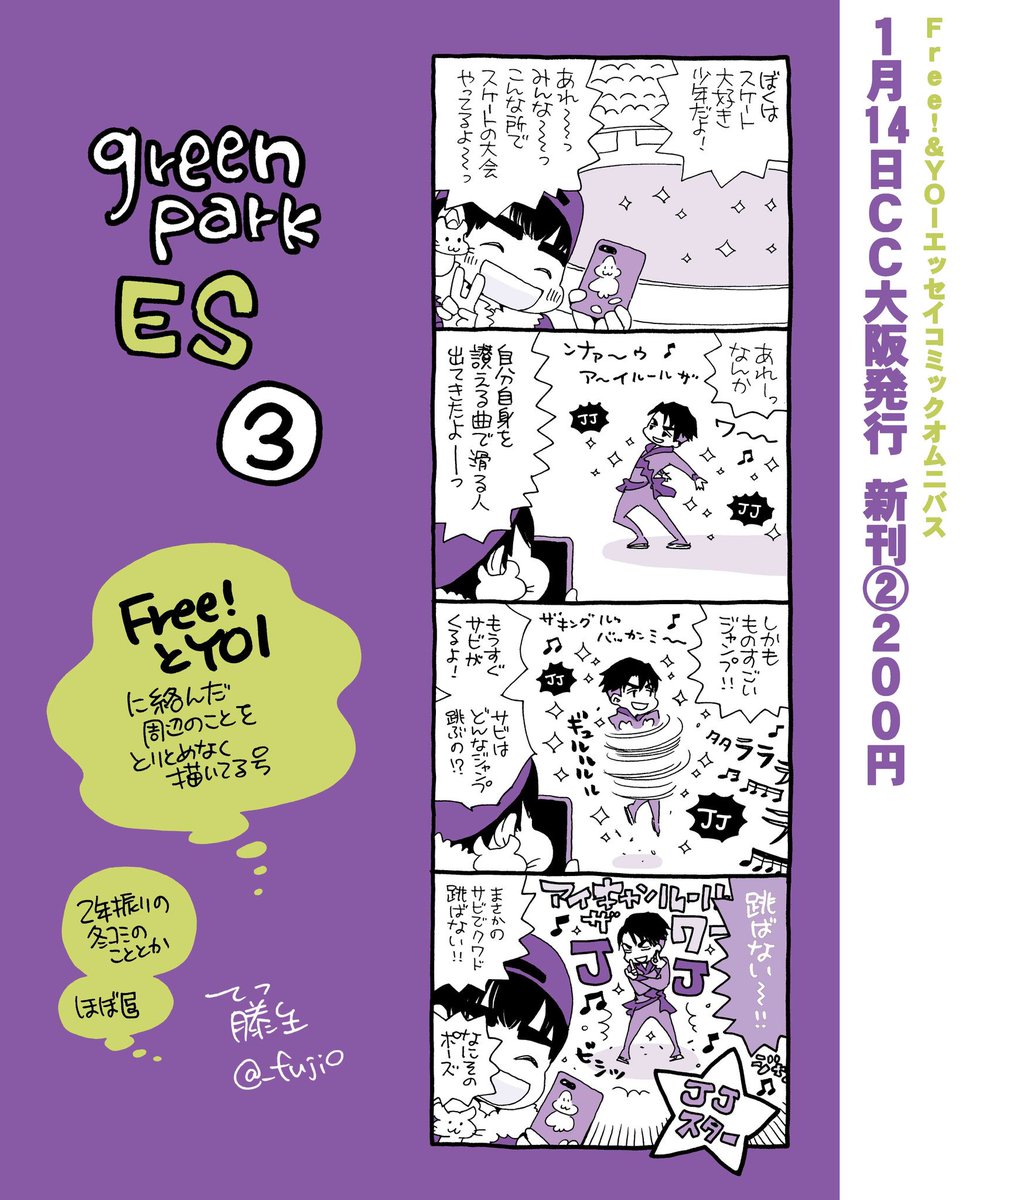 【1/14 CC大阪】green park  新刊2種

1/14の大阪に参加させていただきます
遊びに来て頂けると嬉しいです、どうぞよろしくお願いします 